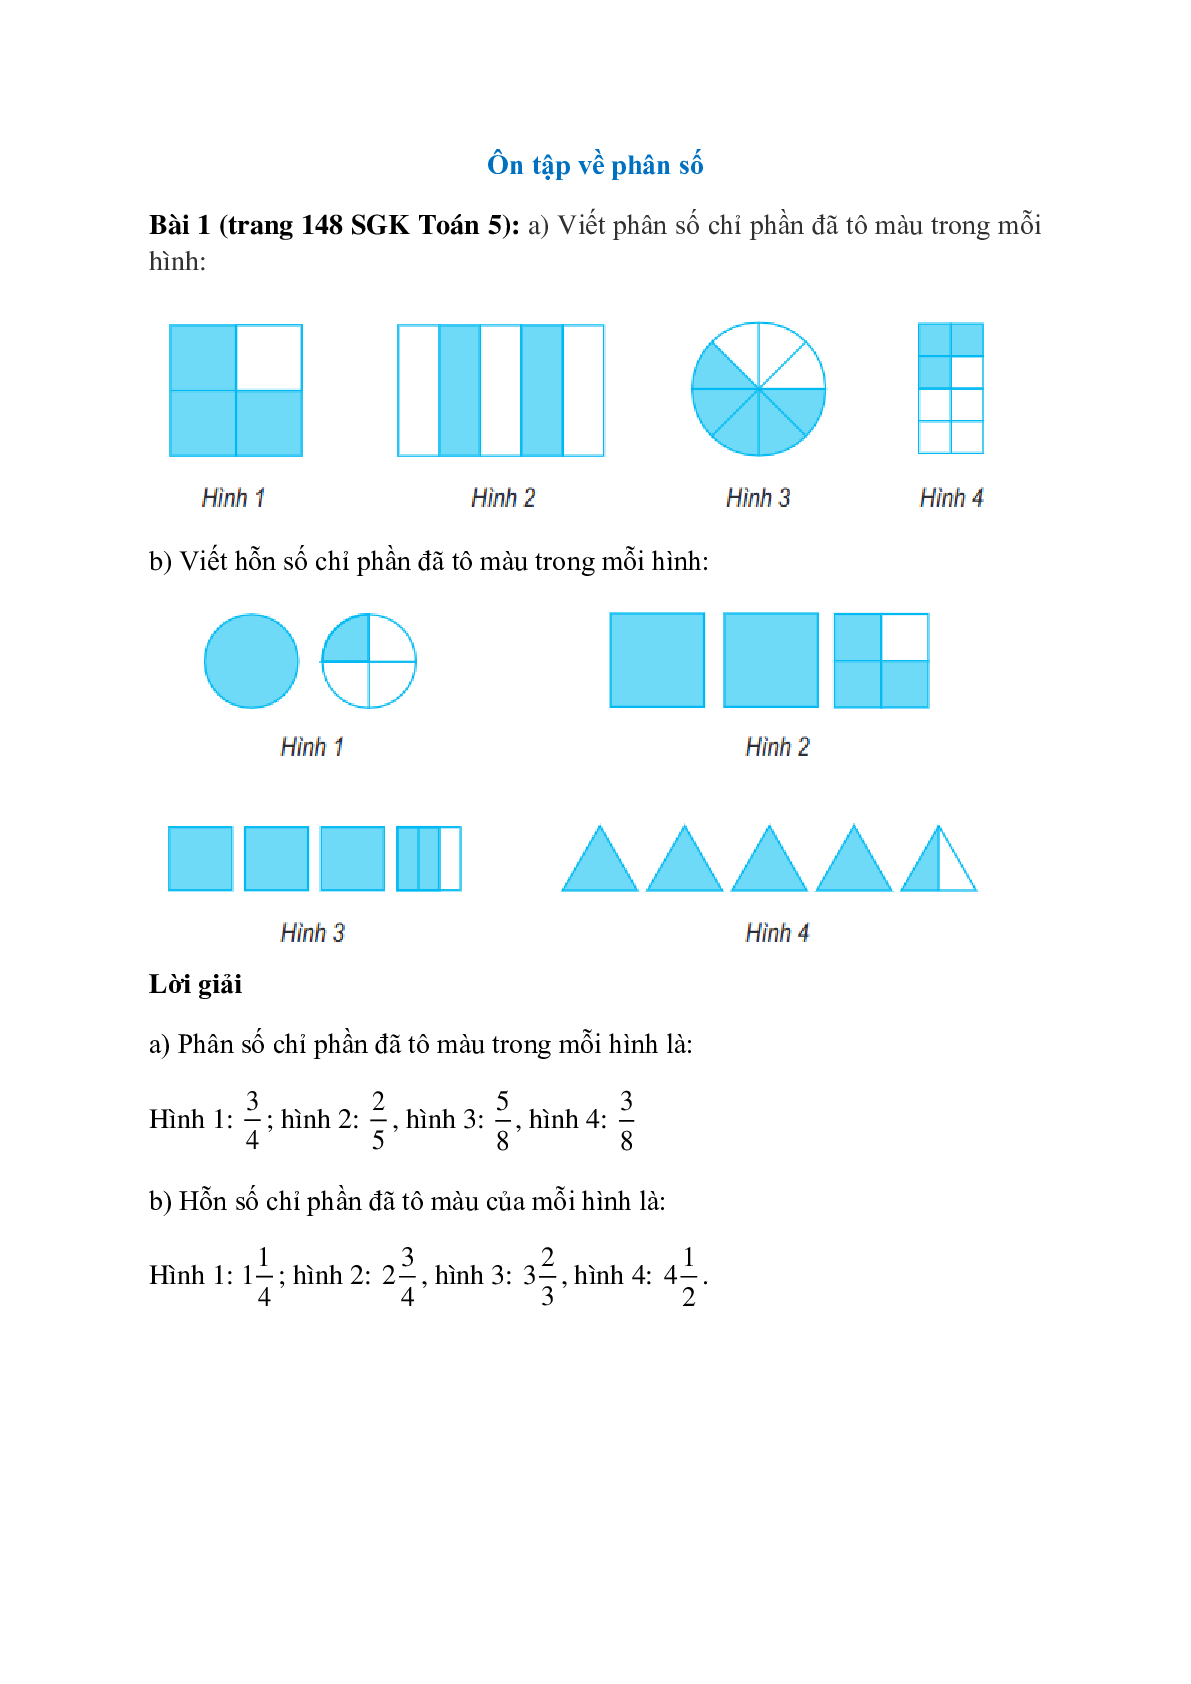 Bài tập toán tư duy - Đếm và tô màu - B8 - STEAM KIDS